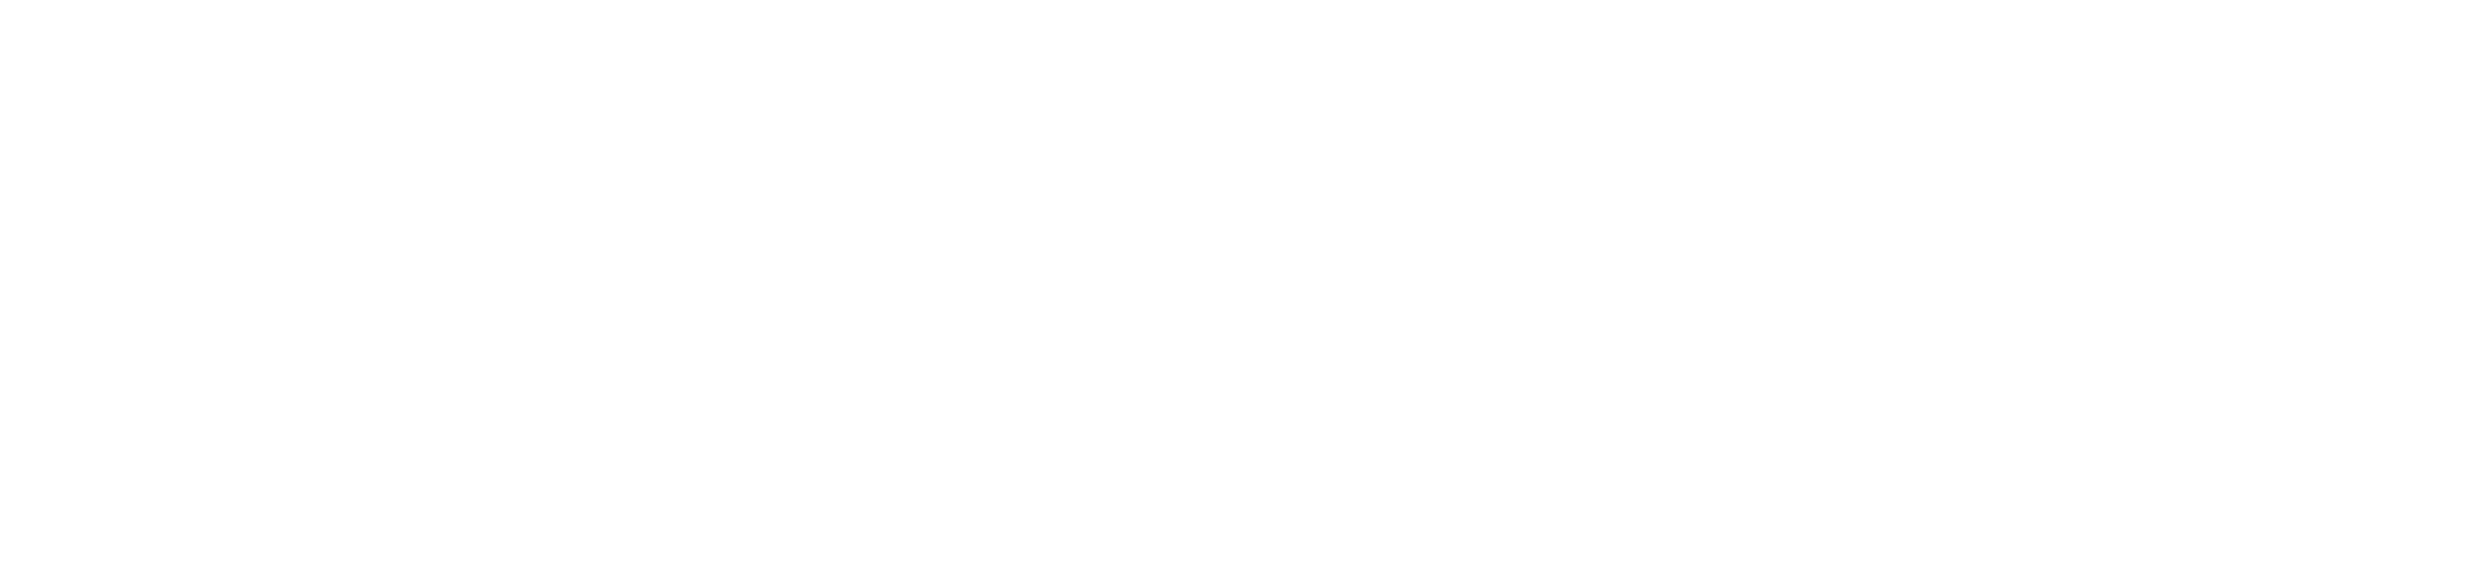 www.adventistas.org.do